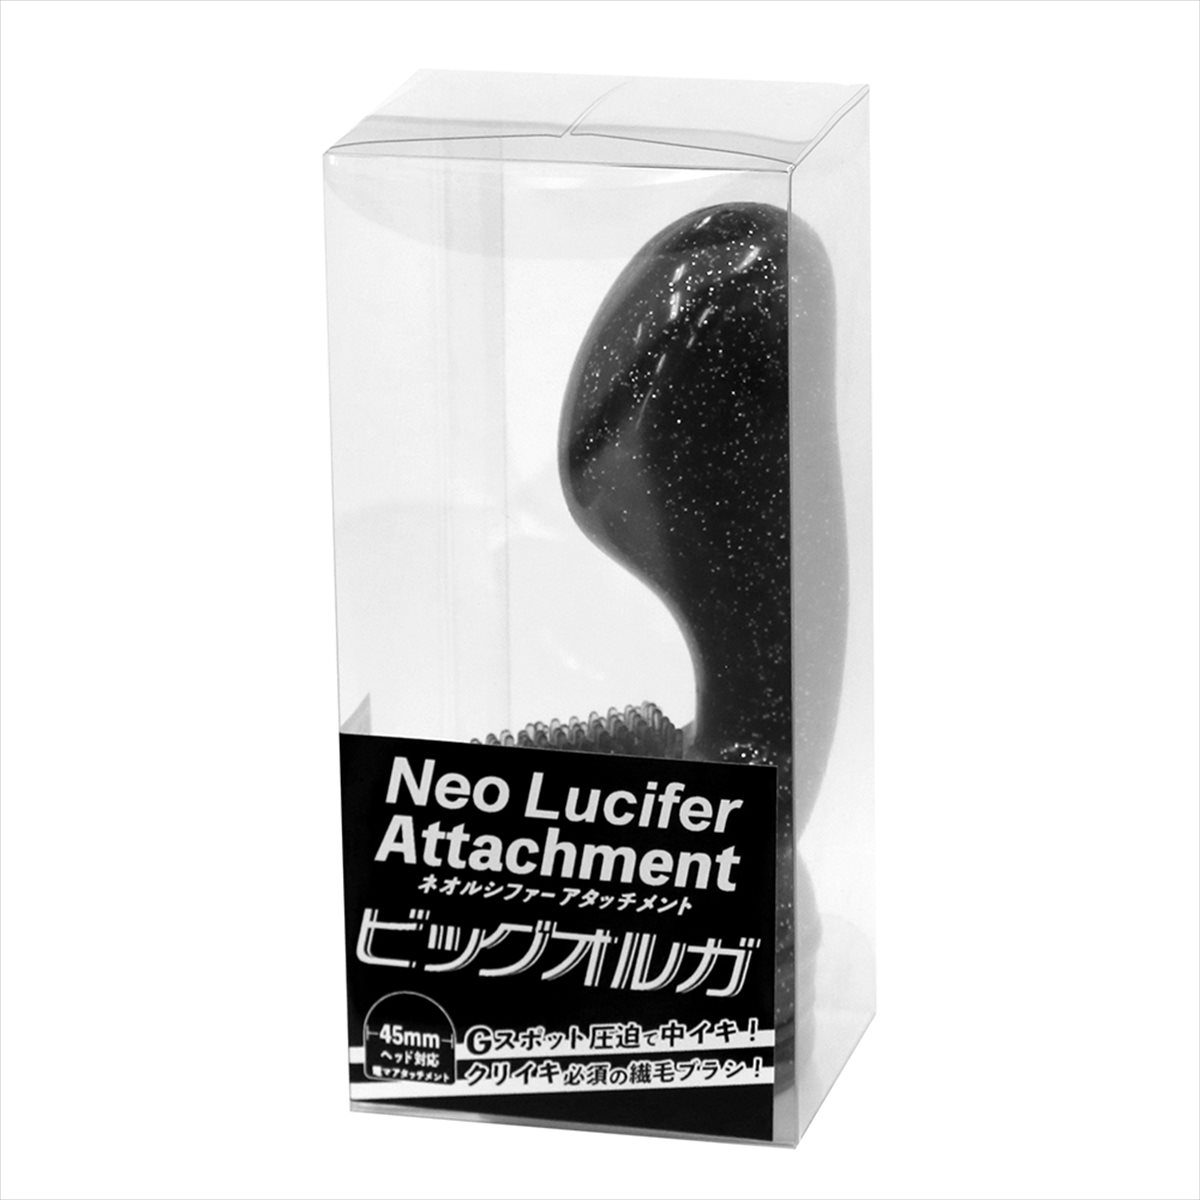 Neo Lucifer